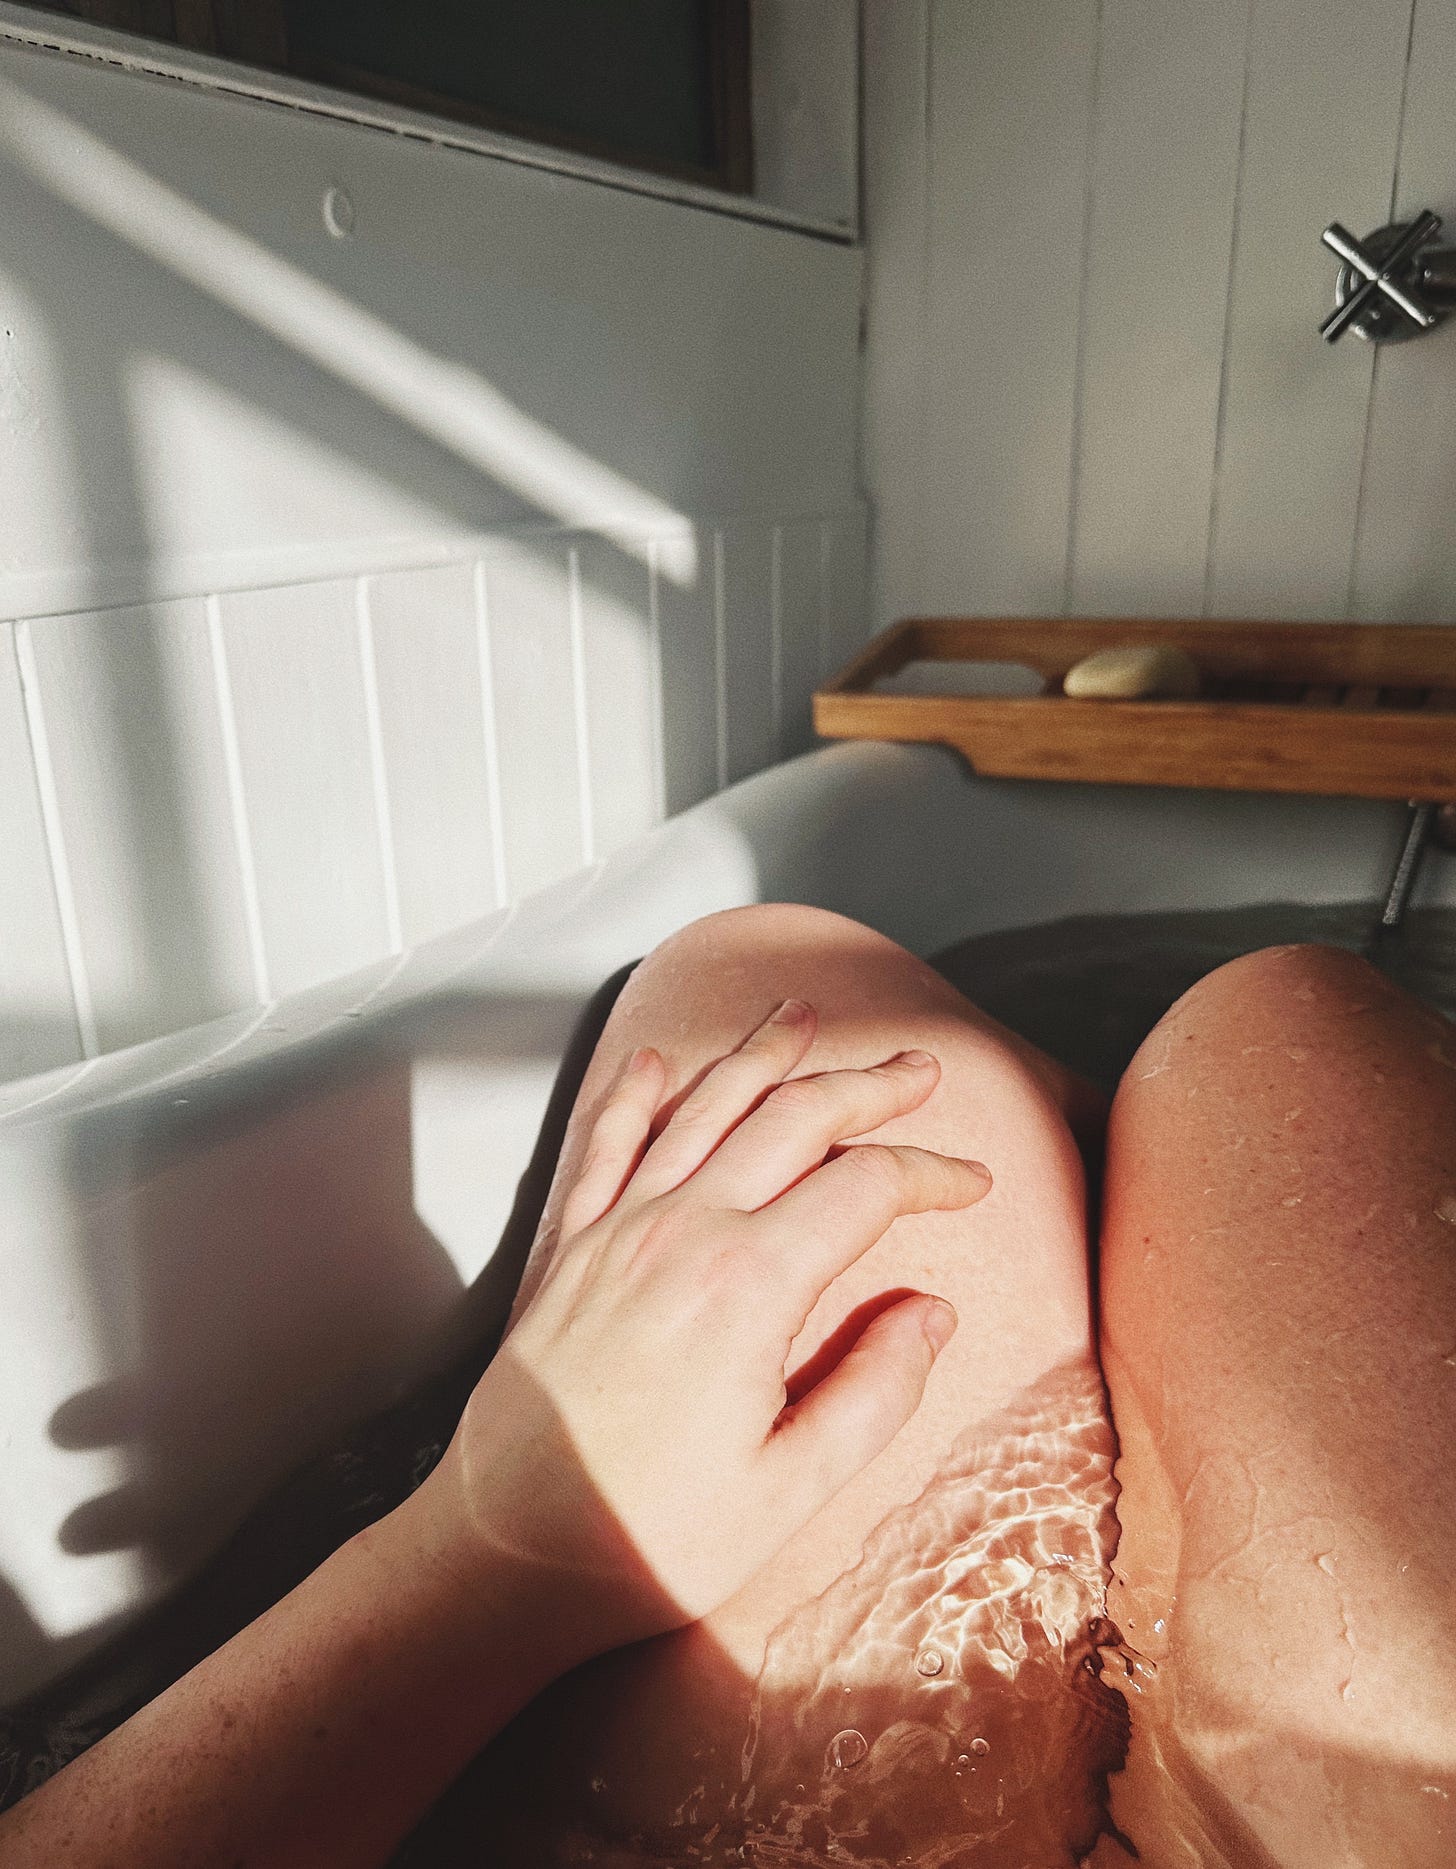 legs in a bathtub, with sunlight